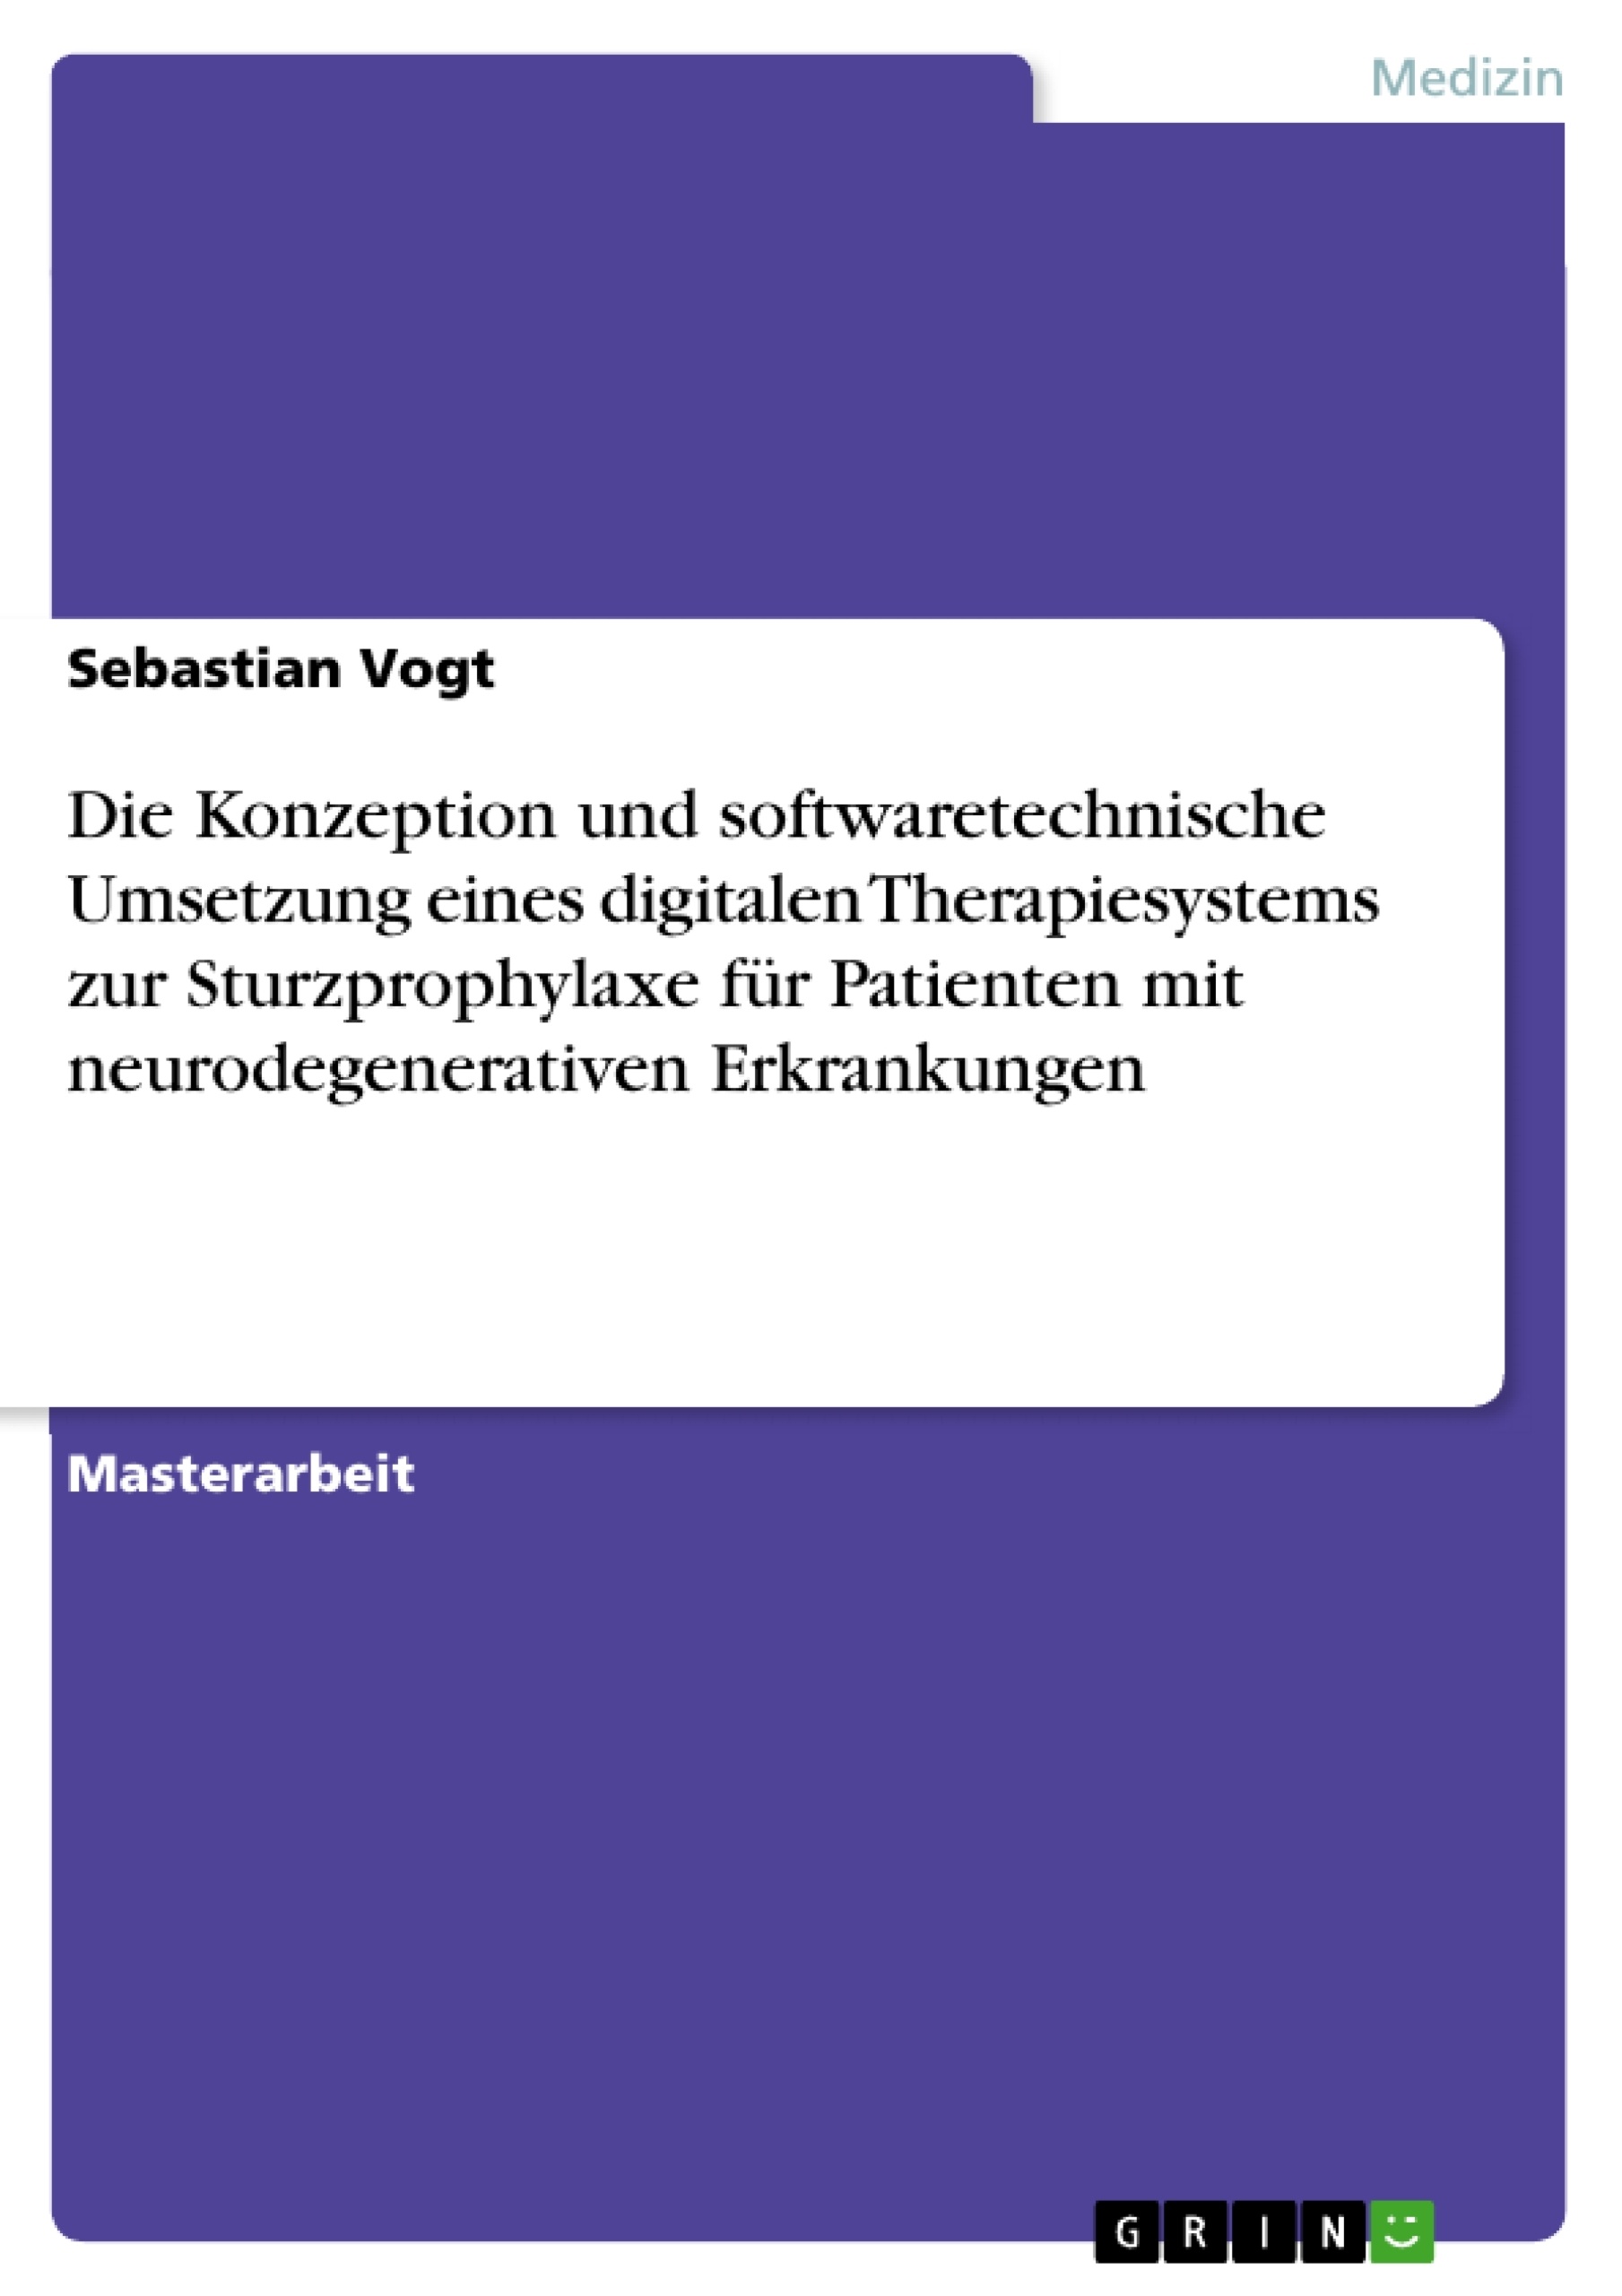 Titre: Die Konzeption und softwaretechnische Umsetzung eines digitalen Therapiesystems zur Sturzprophylaxe für Patienten mit neurodegenerativen Erkrankungen